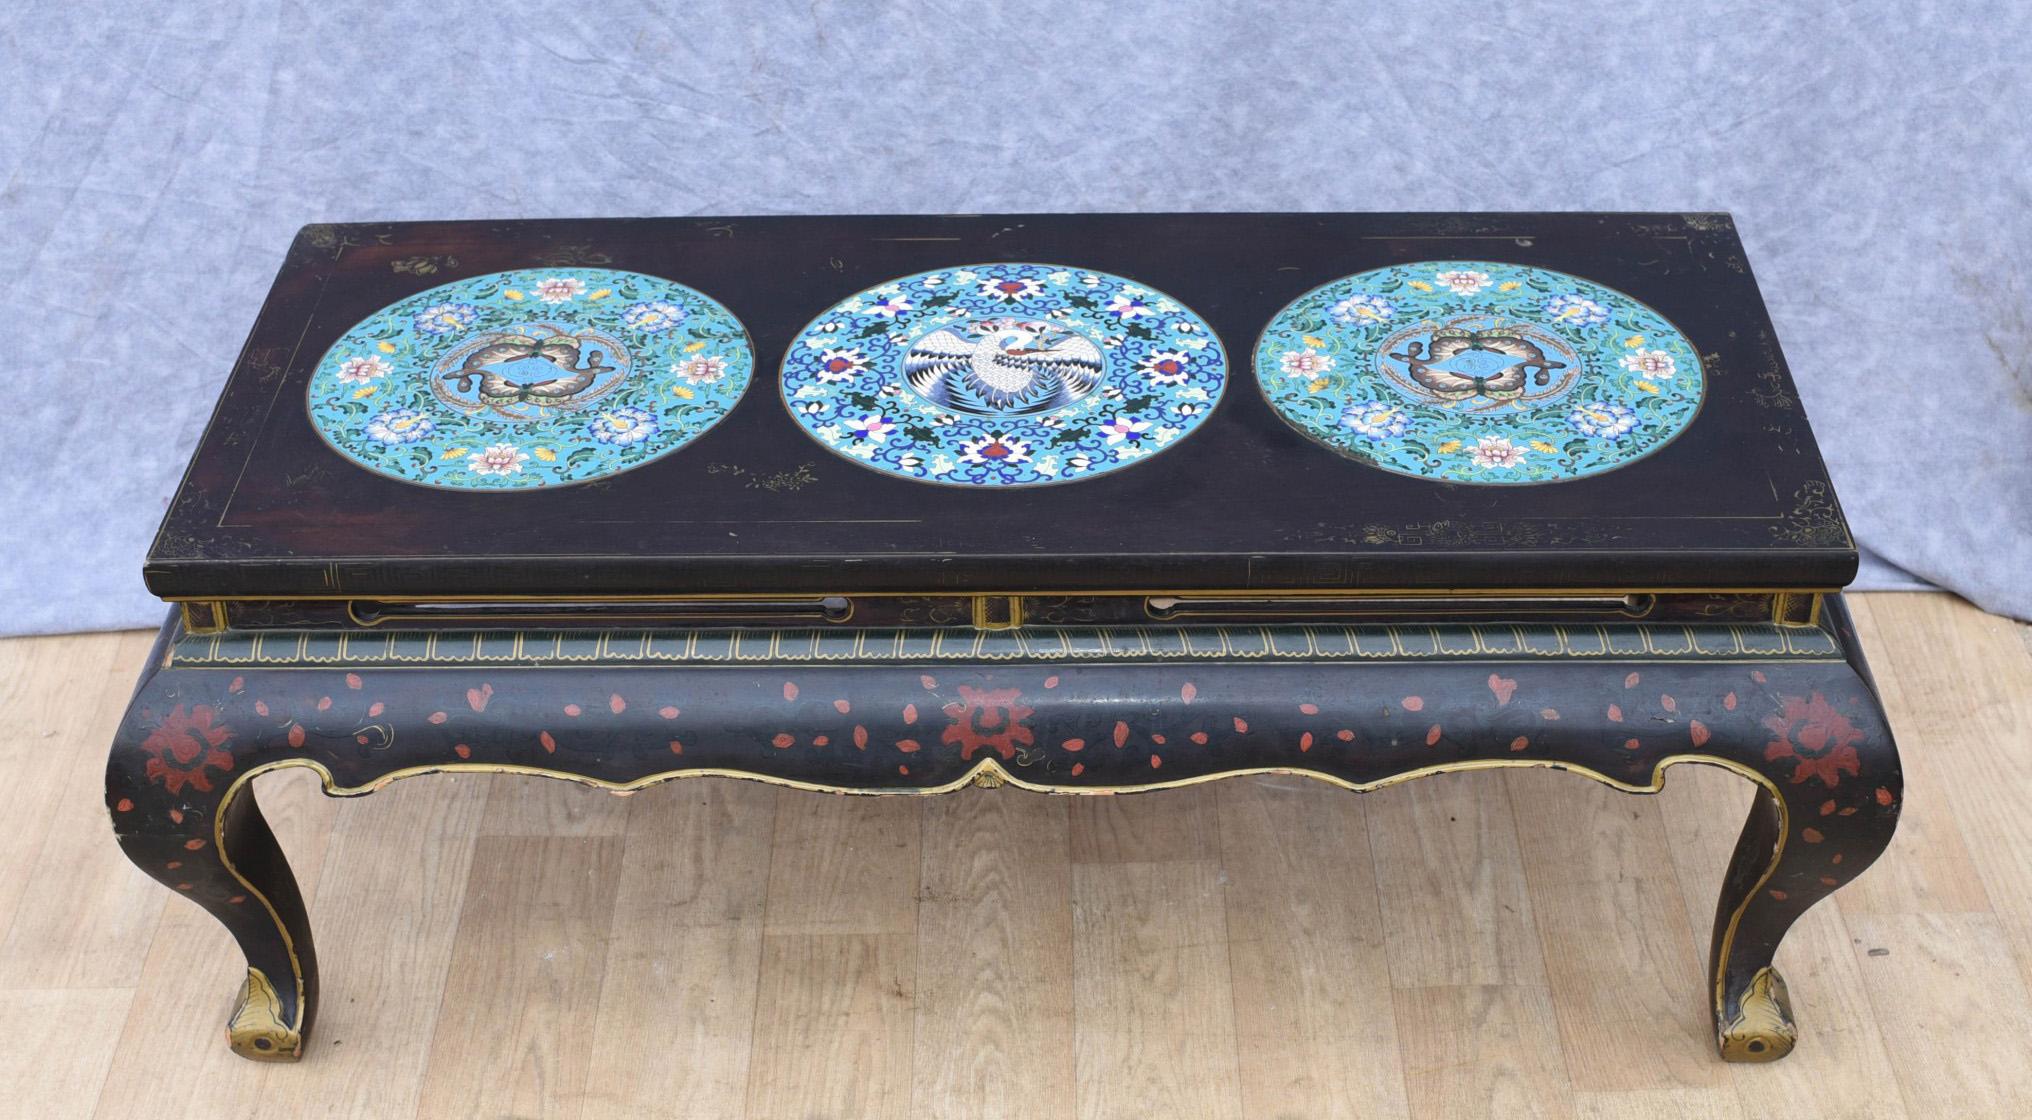 Magnifique table basse chinoise en laque noire
Décorée de trois plaques de porcelaine cloisonnée
Une belle pièce d'intérieur.


